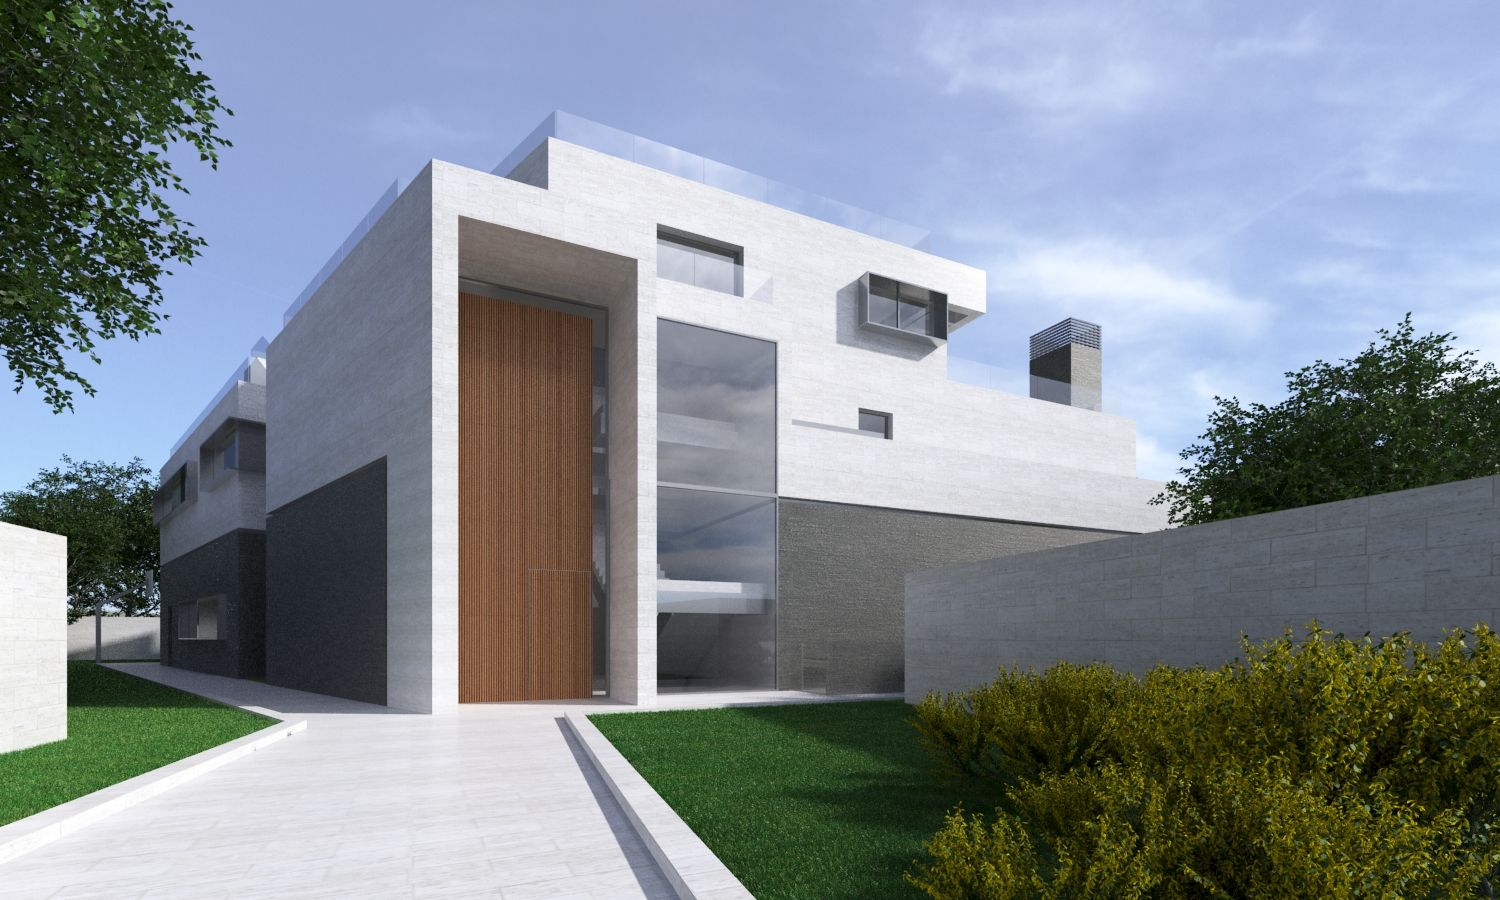 Vivienda unifamiliar en Madrid, ARQZONE 3D+Design Studio ARQZONE 3D+Design Studio Single family home Limestone